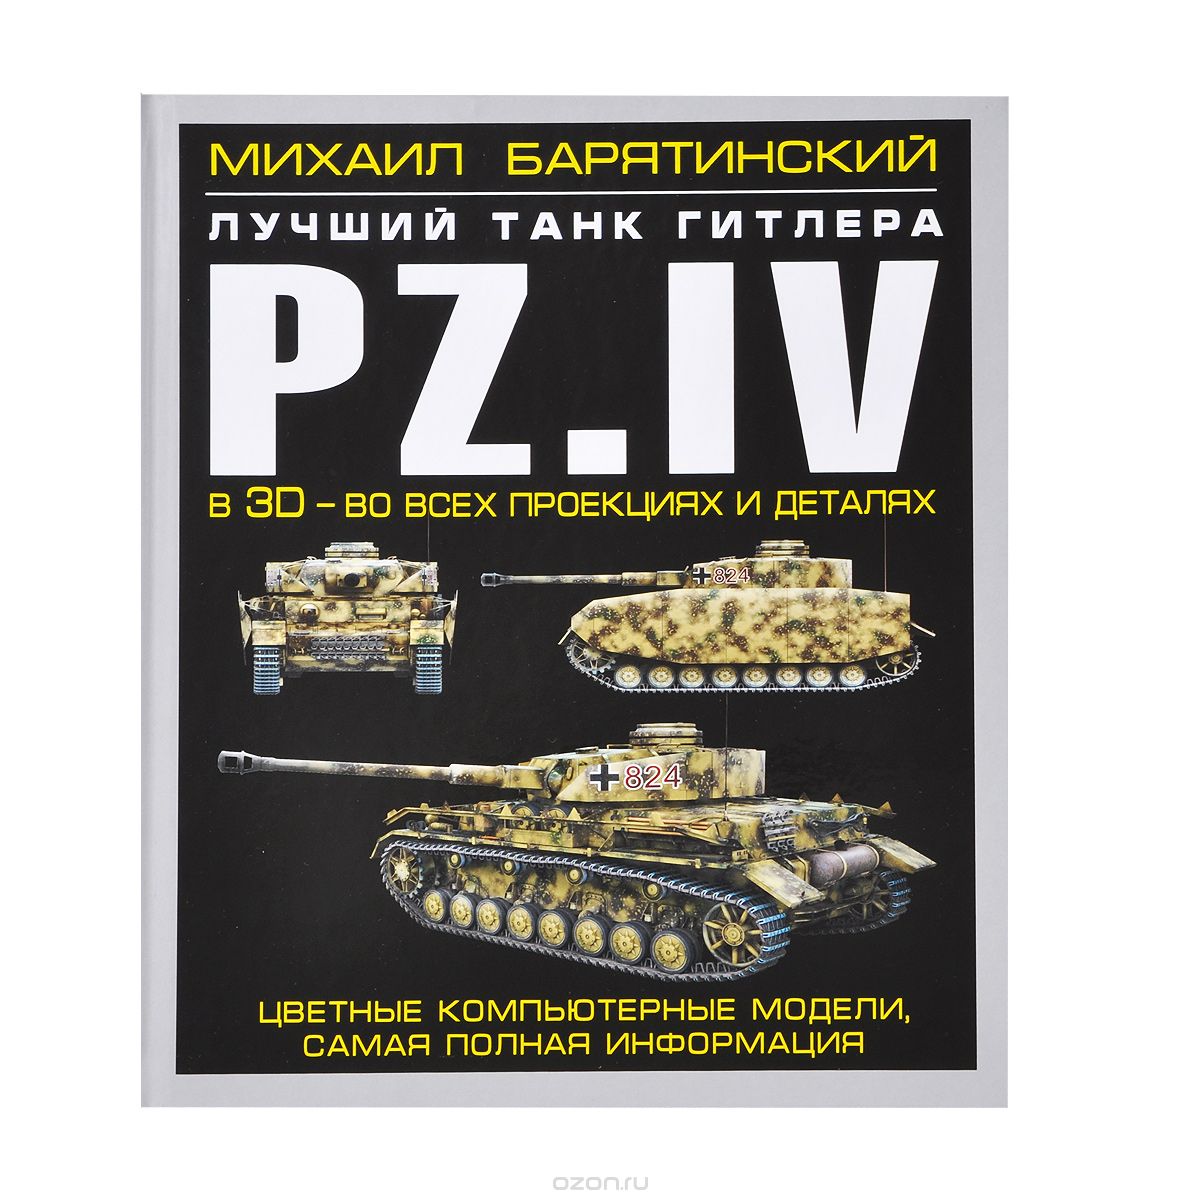 Скачать книгу "Pz.IV. Лучший танк Гитлера в 3D - во всех проекциях и деталях, Михаил Барятинский"